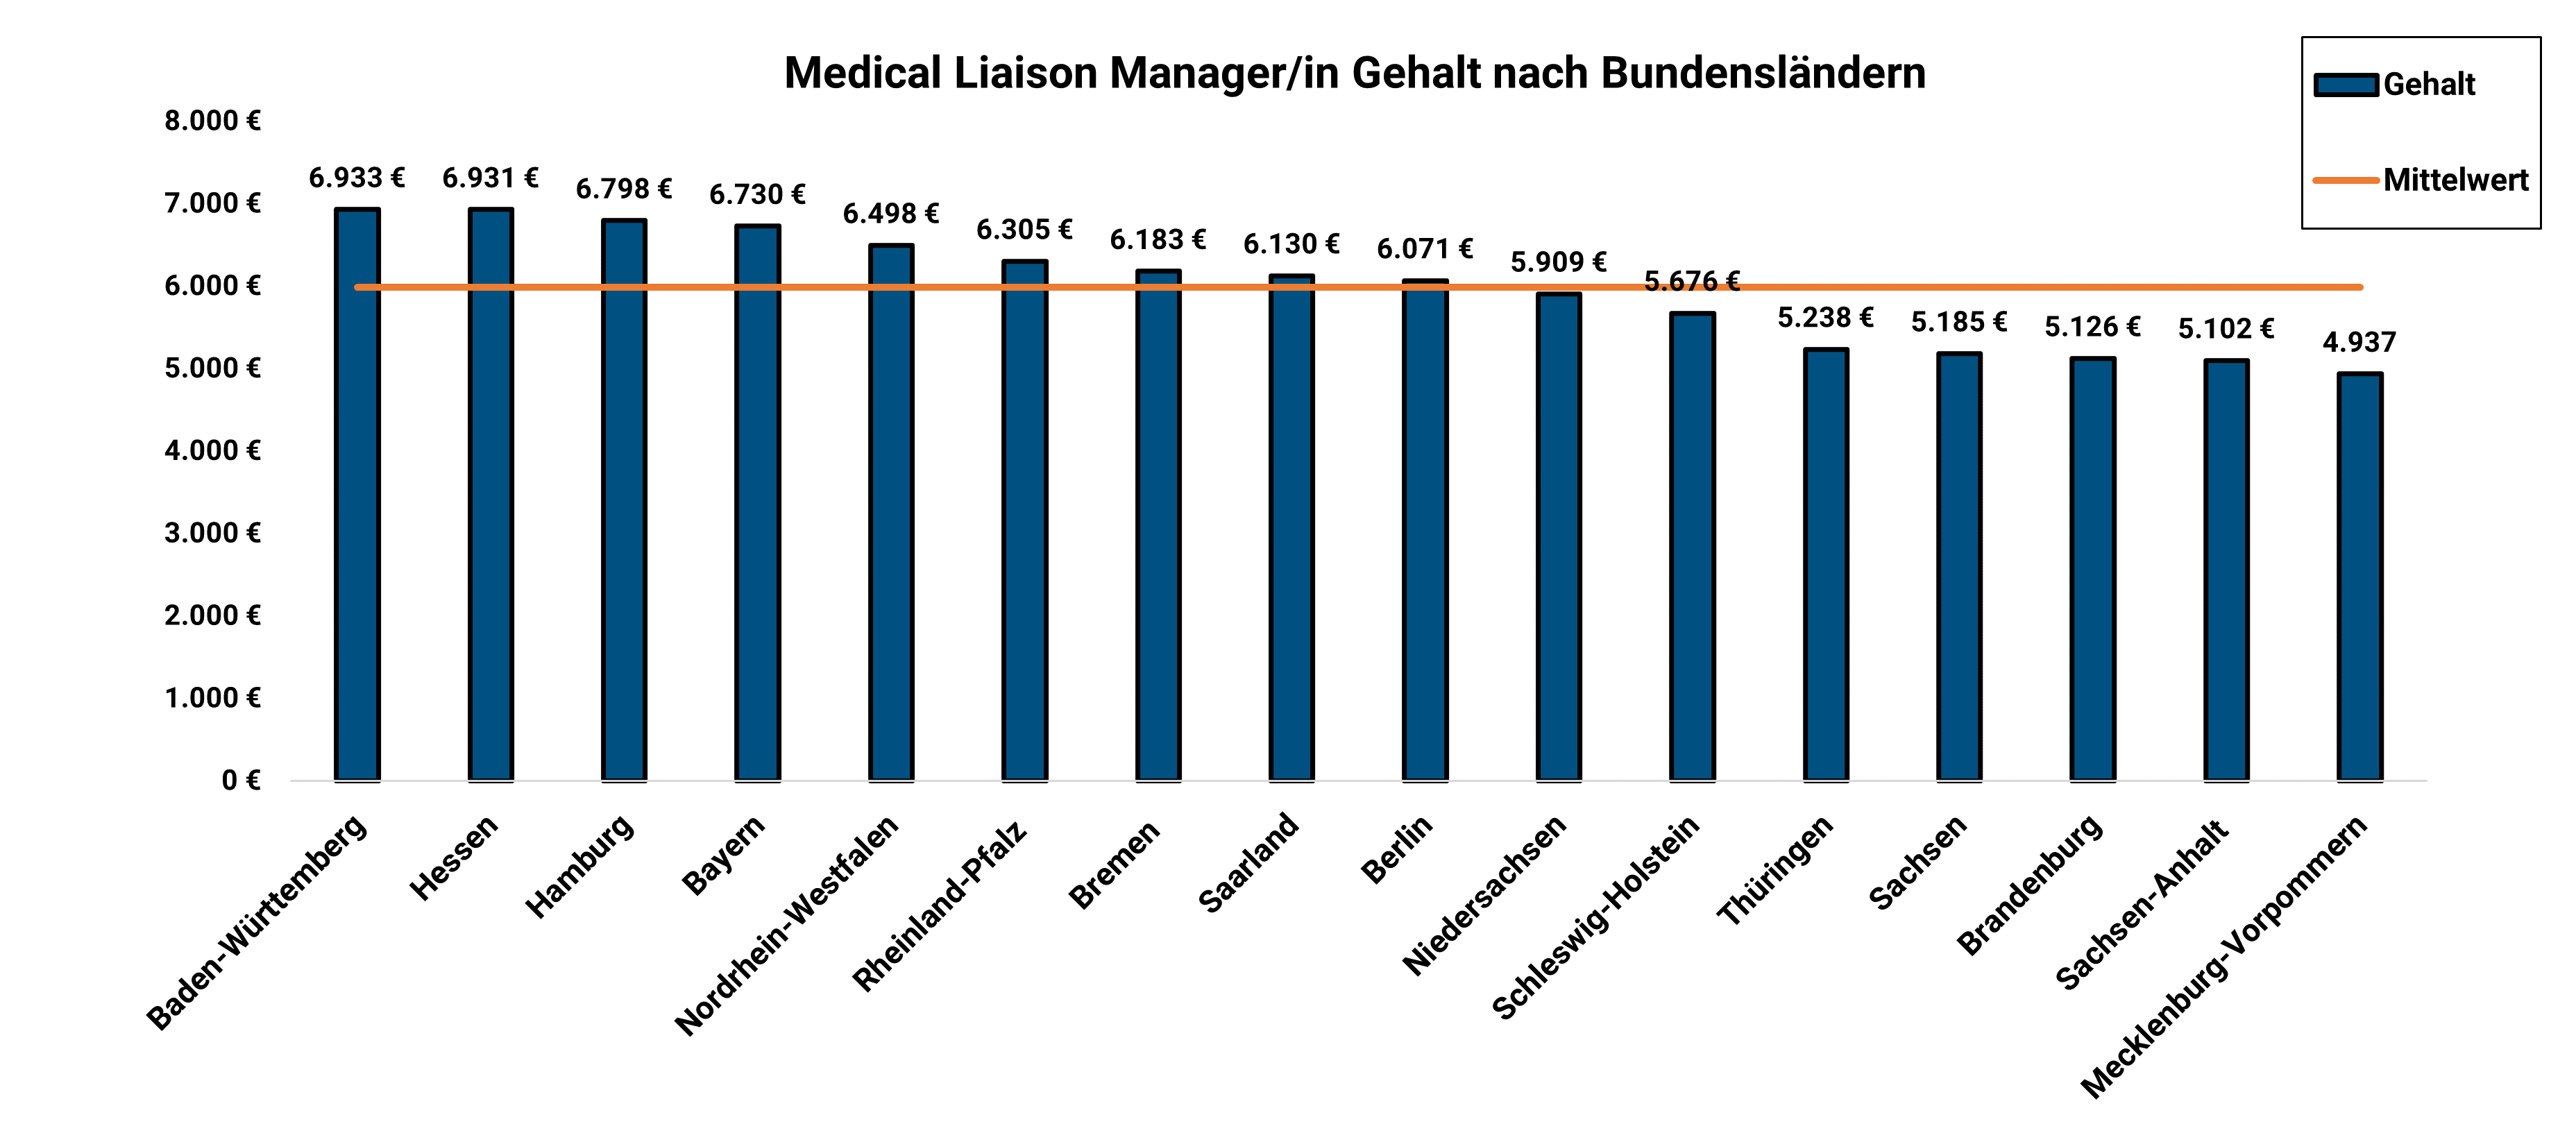 Medical Liaison Manager Gehalt Nach Bundesländern